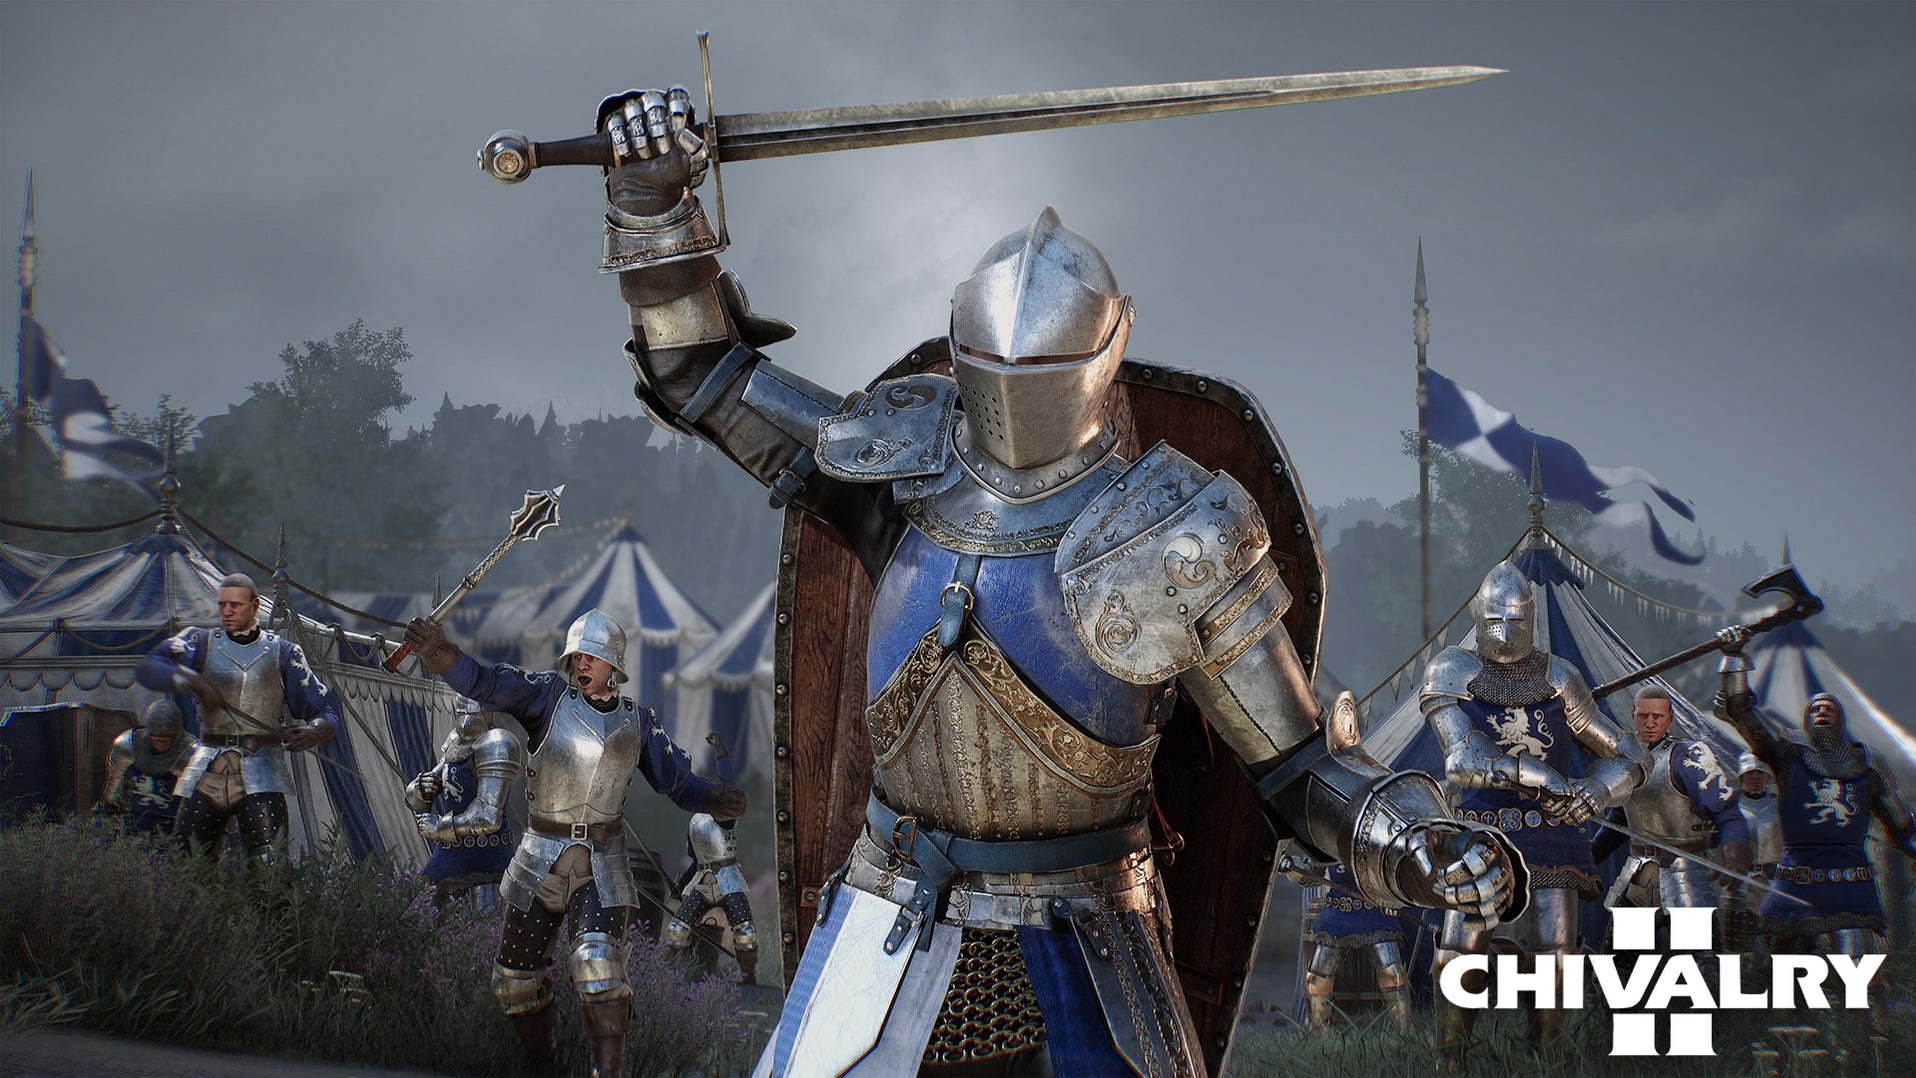 chivalry medieval warfare console commands